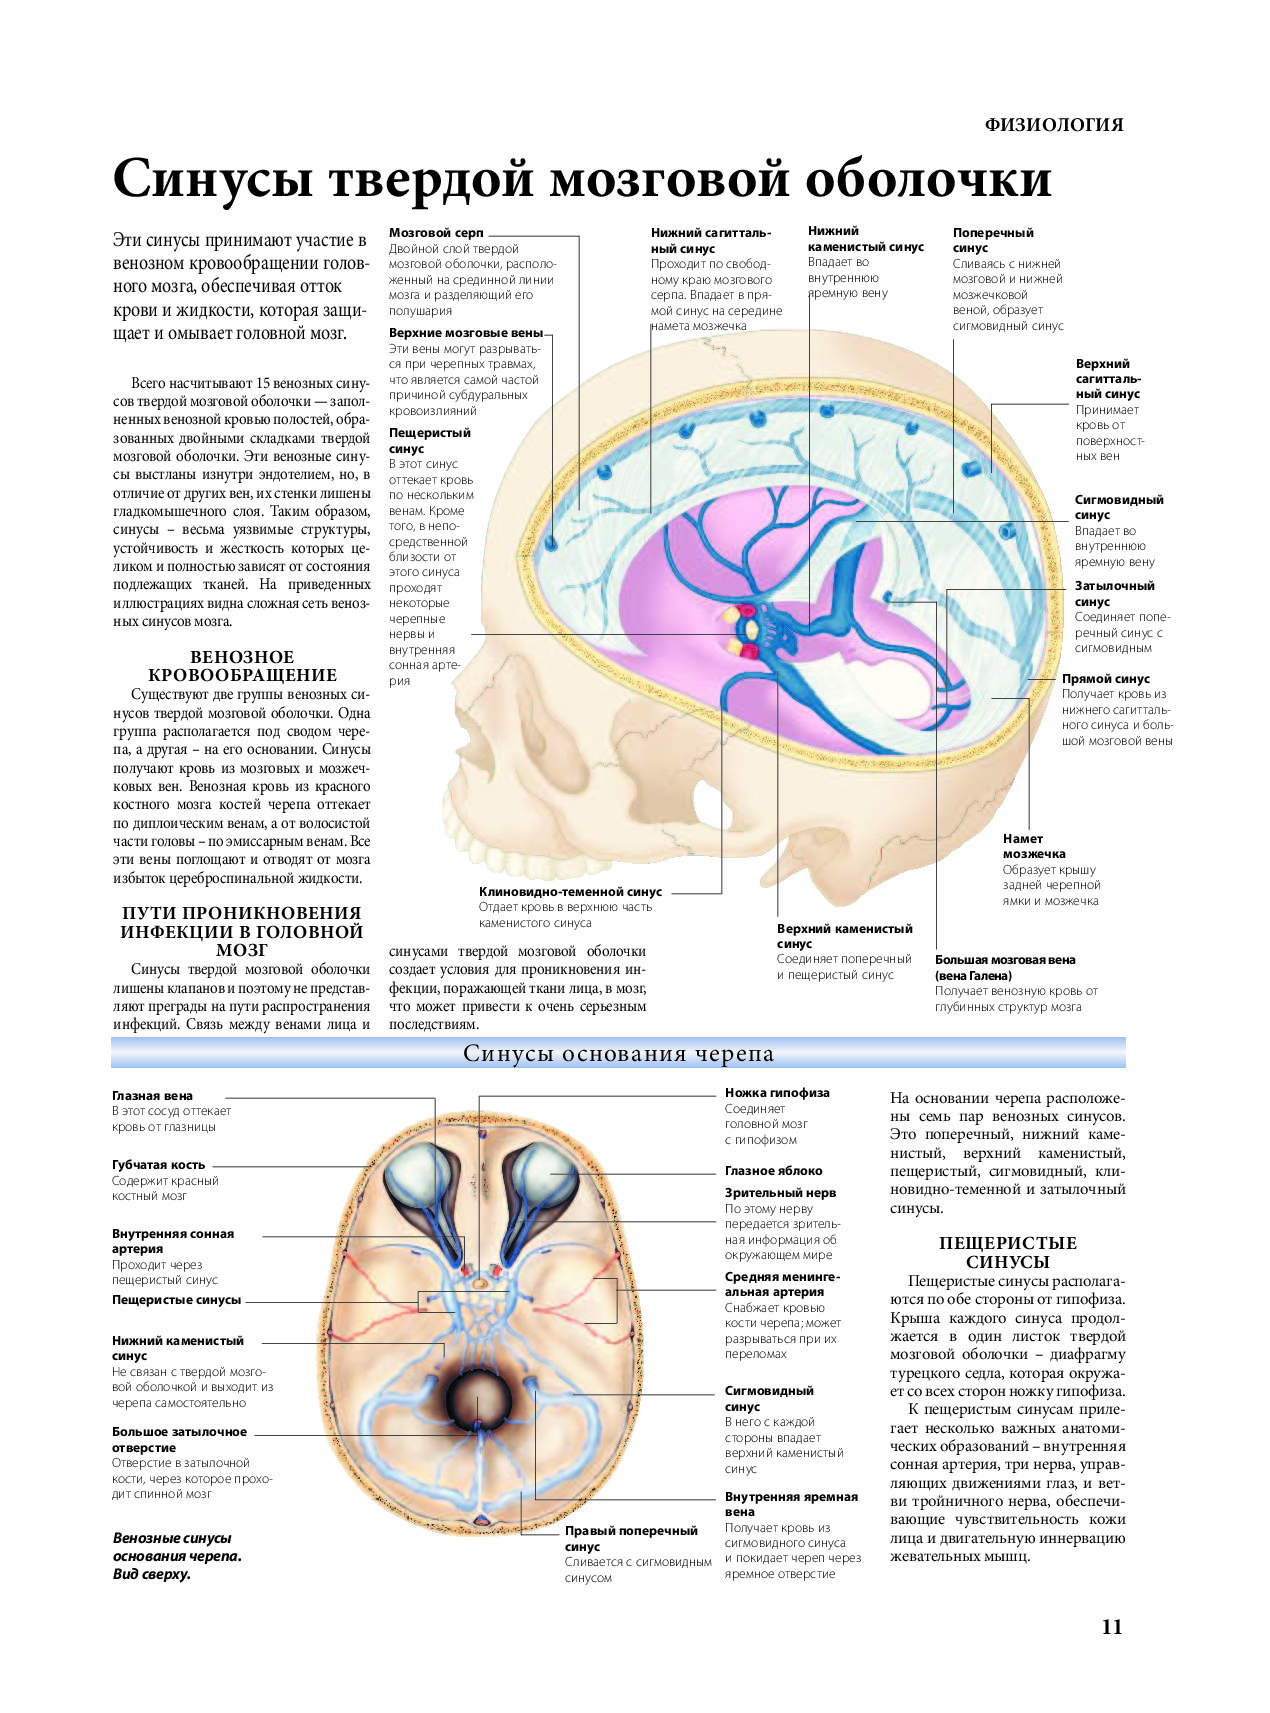 Синус оболочки мозга. Синусы твердой мозговой оболочки топографическая анатомия. Вены синусы твердой мозговой оболочки. Топография синусов твердой мозговой оболочки. Венозные синусы головного мозга анатомия.